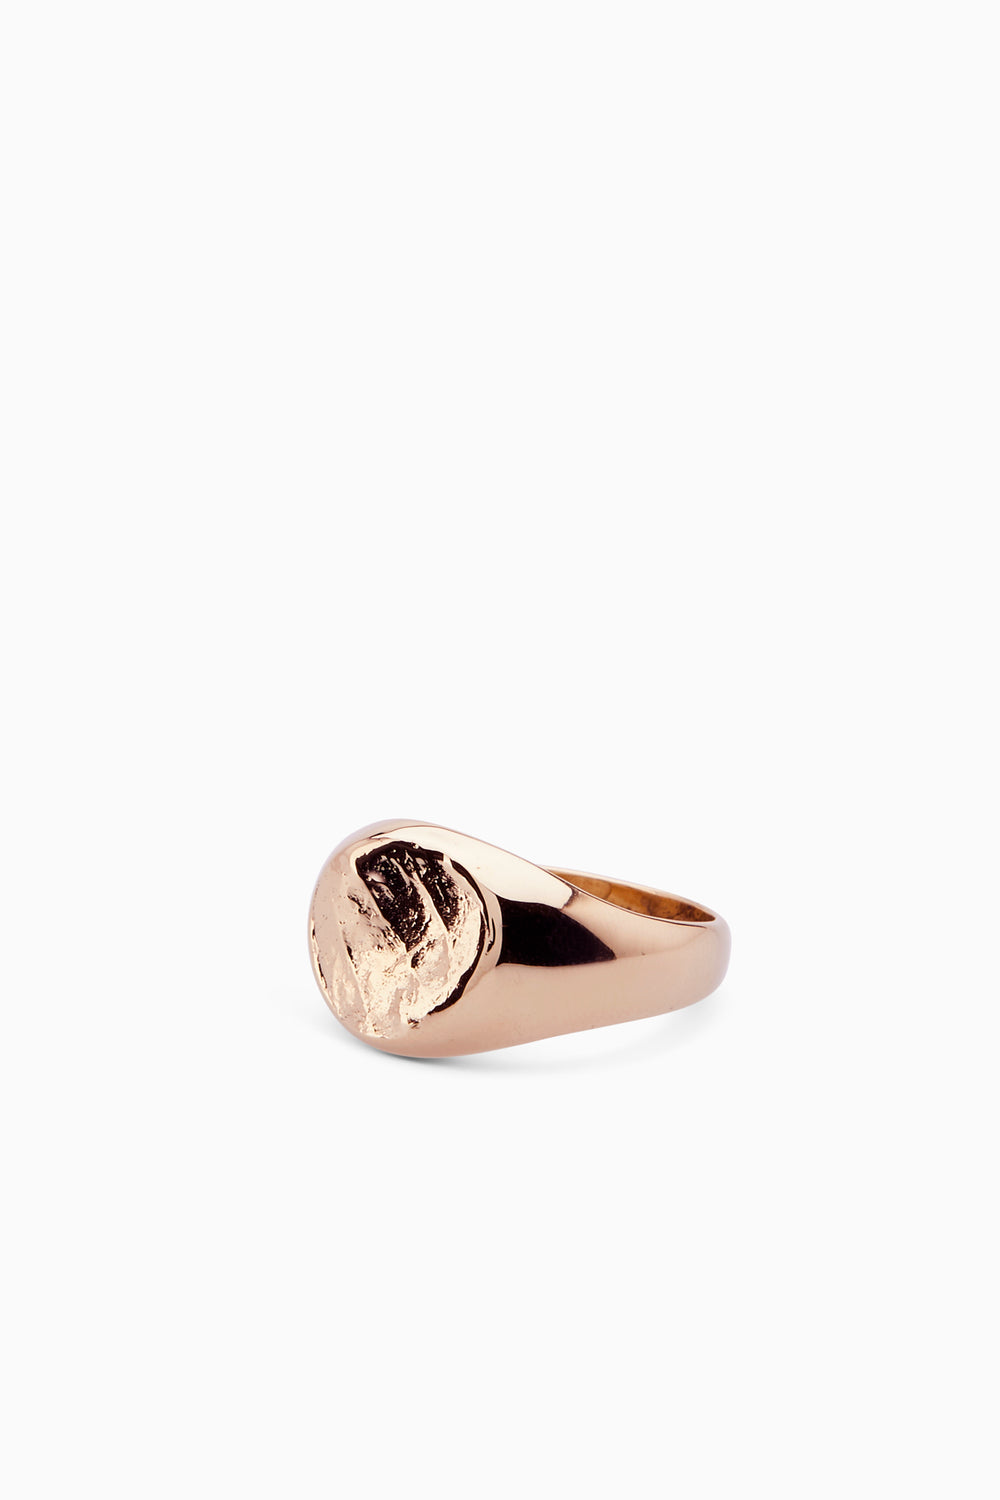 Impression Signet Ring | Rose Gold